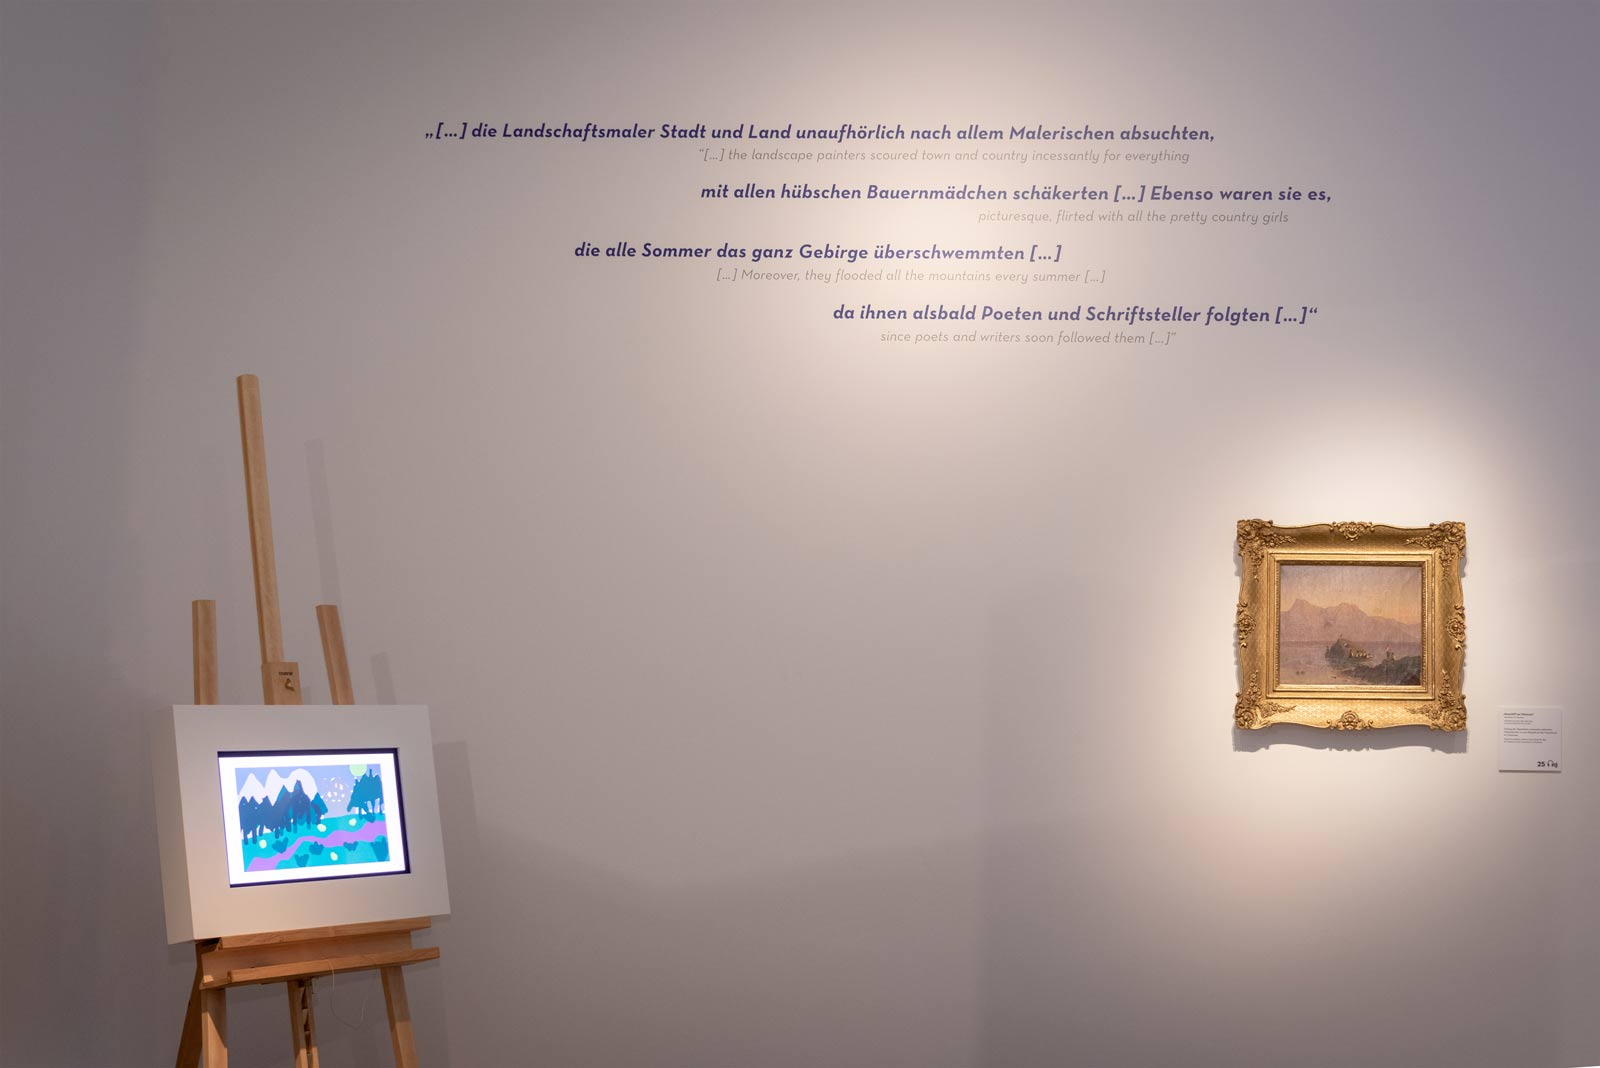 Das Referenzbild für Ausstellungsgestaltung aus der Sonderausstellung Wald, Gebirg und Königstraum – Mythos Bayern zeigt eine Hands-on-Station mit Multimedia-Inhalten.